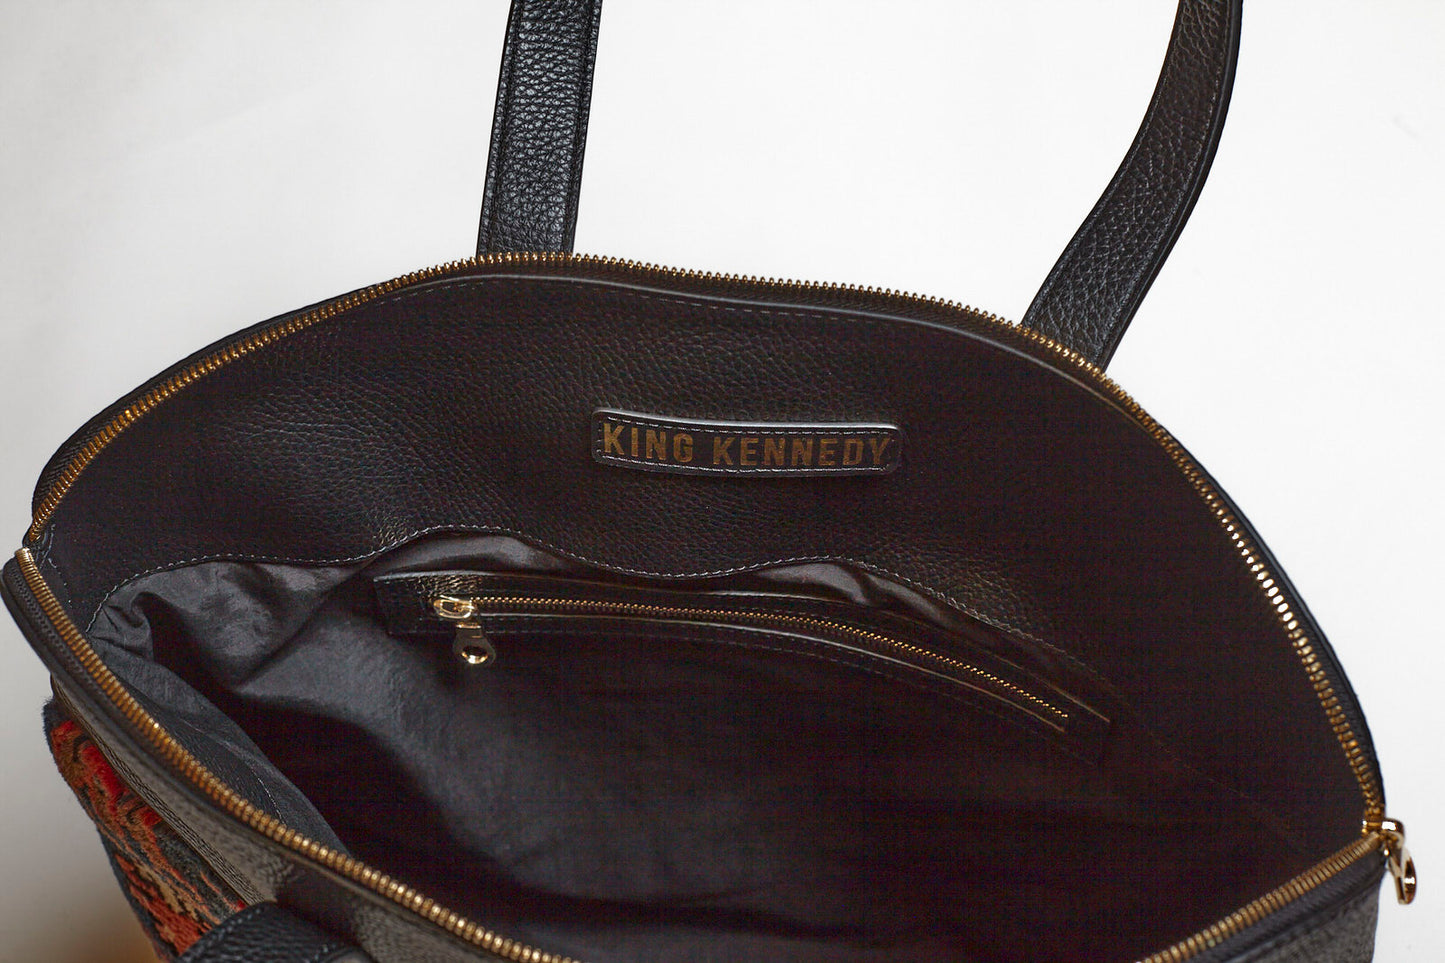 King Kennedy Despina Bag - 00016